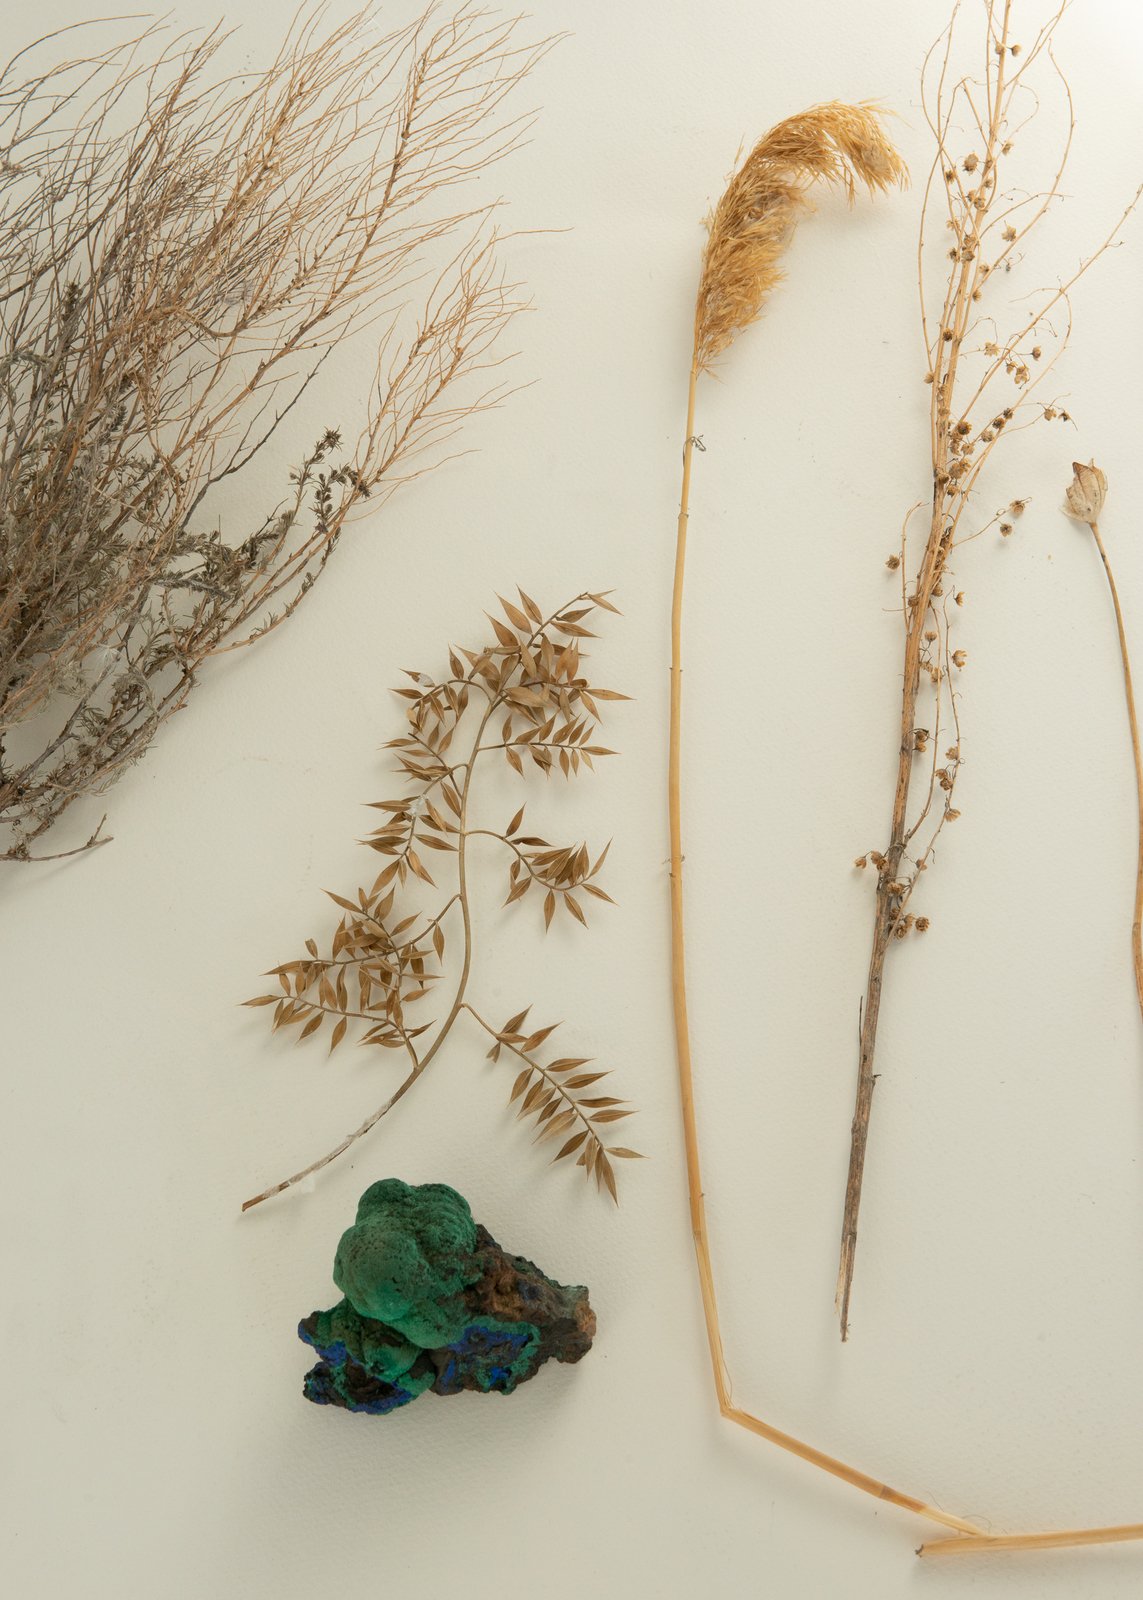 Растения и&nbsp;камни, собранные Ольгой Гротовой в&nbsp;исследовательских поездках  Предоставлено художницей